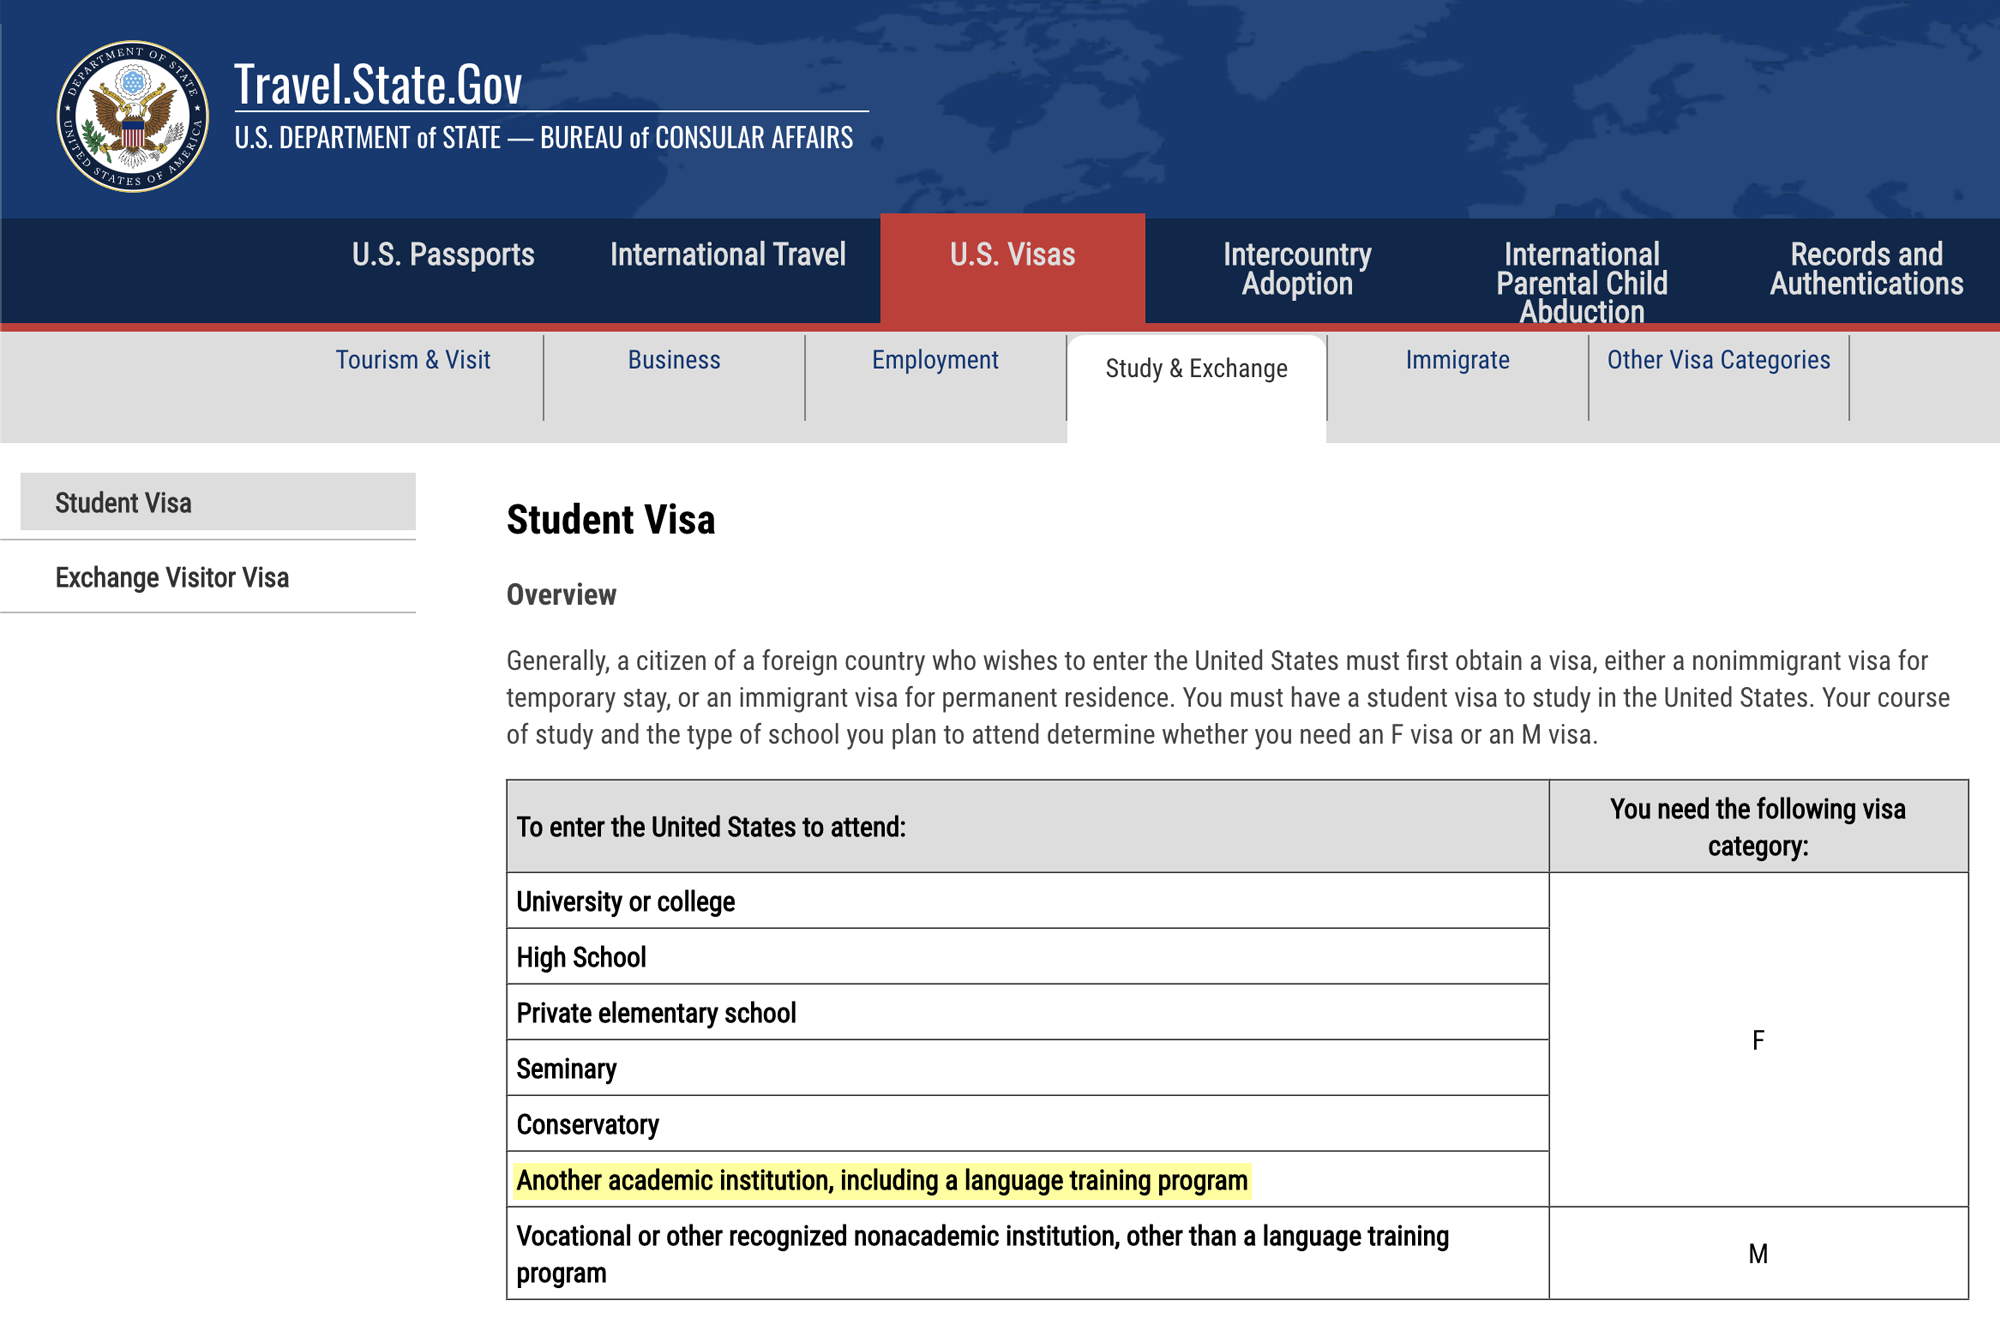 Вариант с визой для обучения на языковых курсах прописан даже на официальном сайте Бюро консульских дел США. Поэтому способ переезда по учебной визе легален на 100%. Источник: travel.state.gov